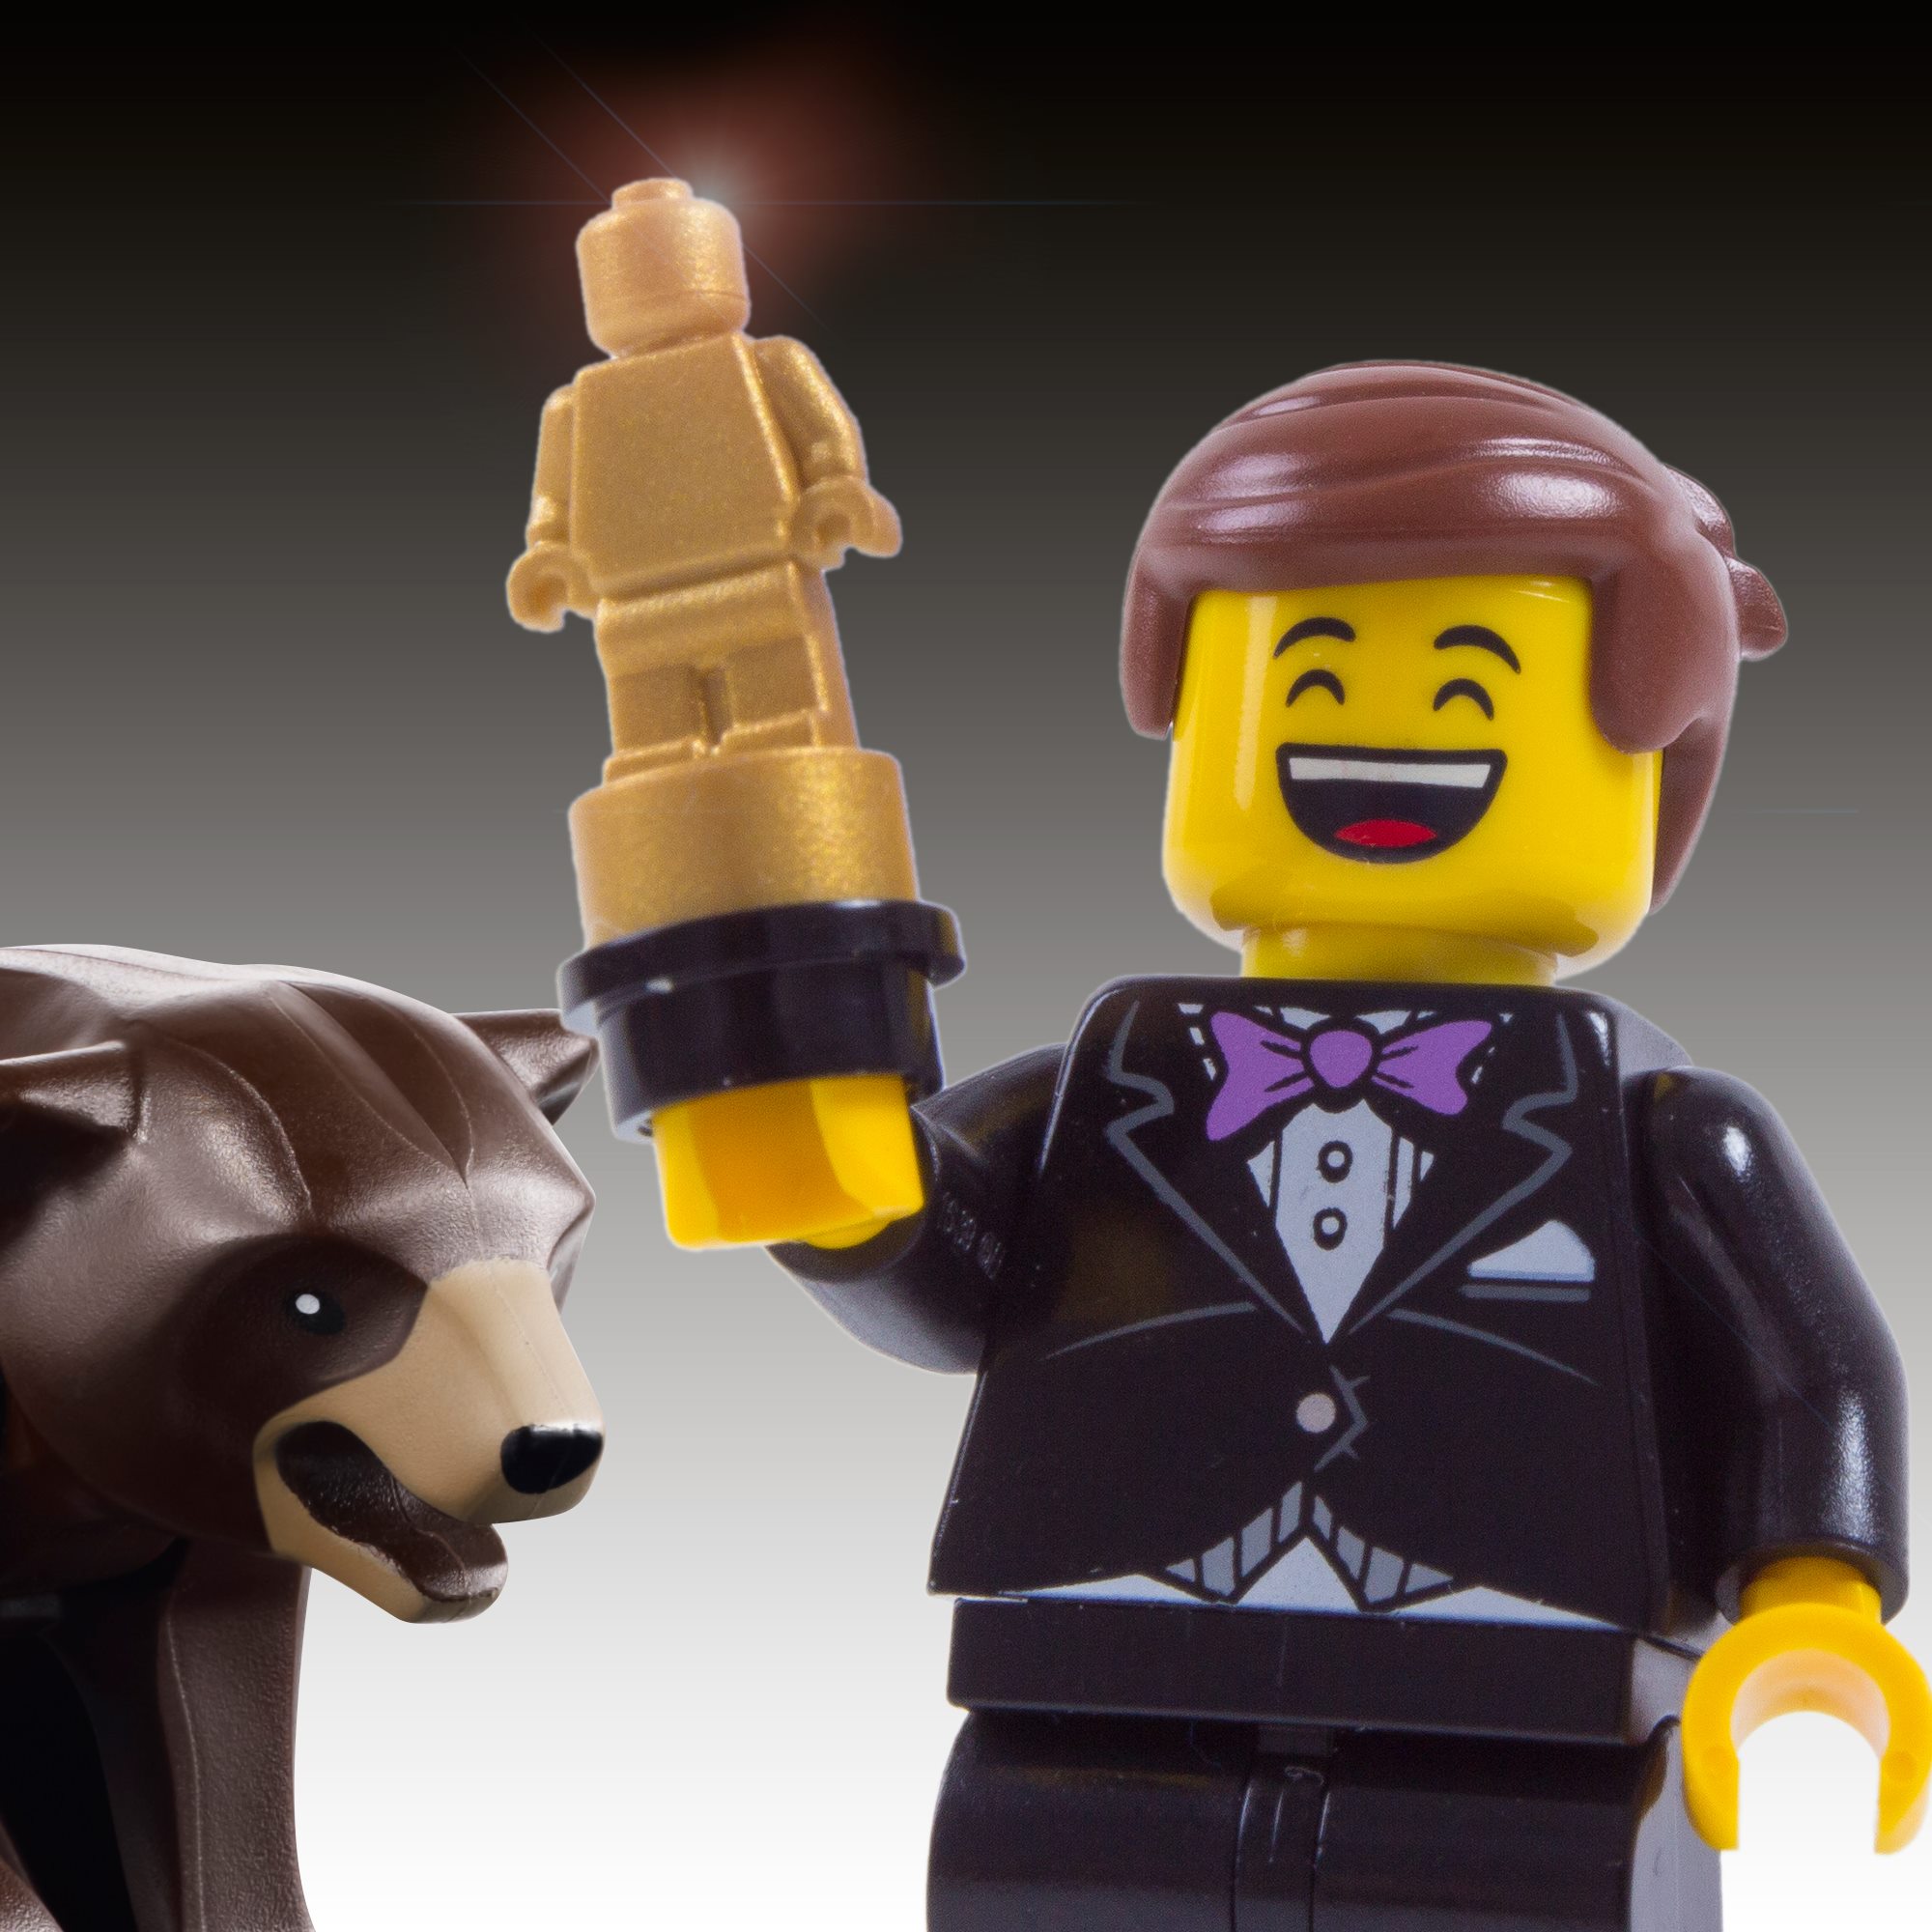 figurka lego lenardo dicaprio trzymająca oscara za film zjawa, dlatego w jej pobliżu stoi niedźwiedź z tego filmu